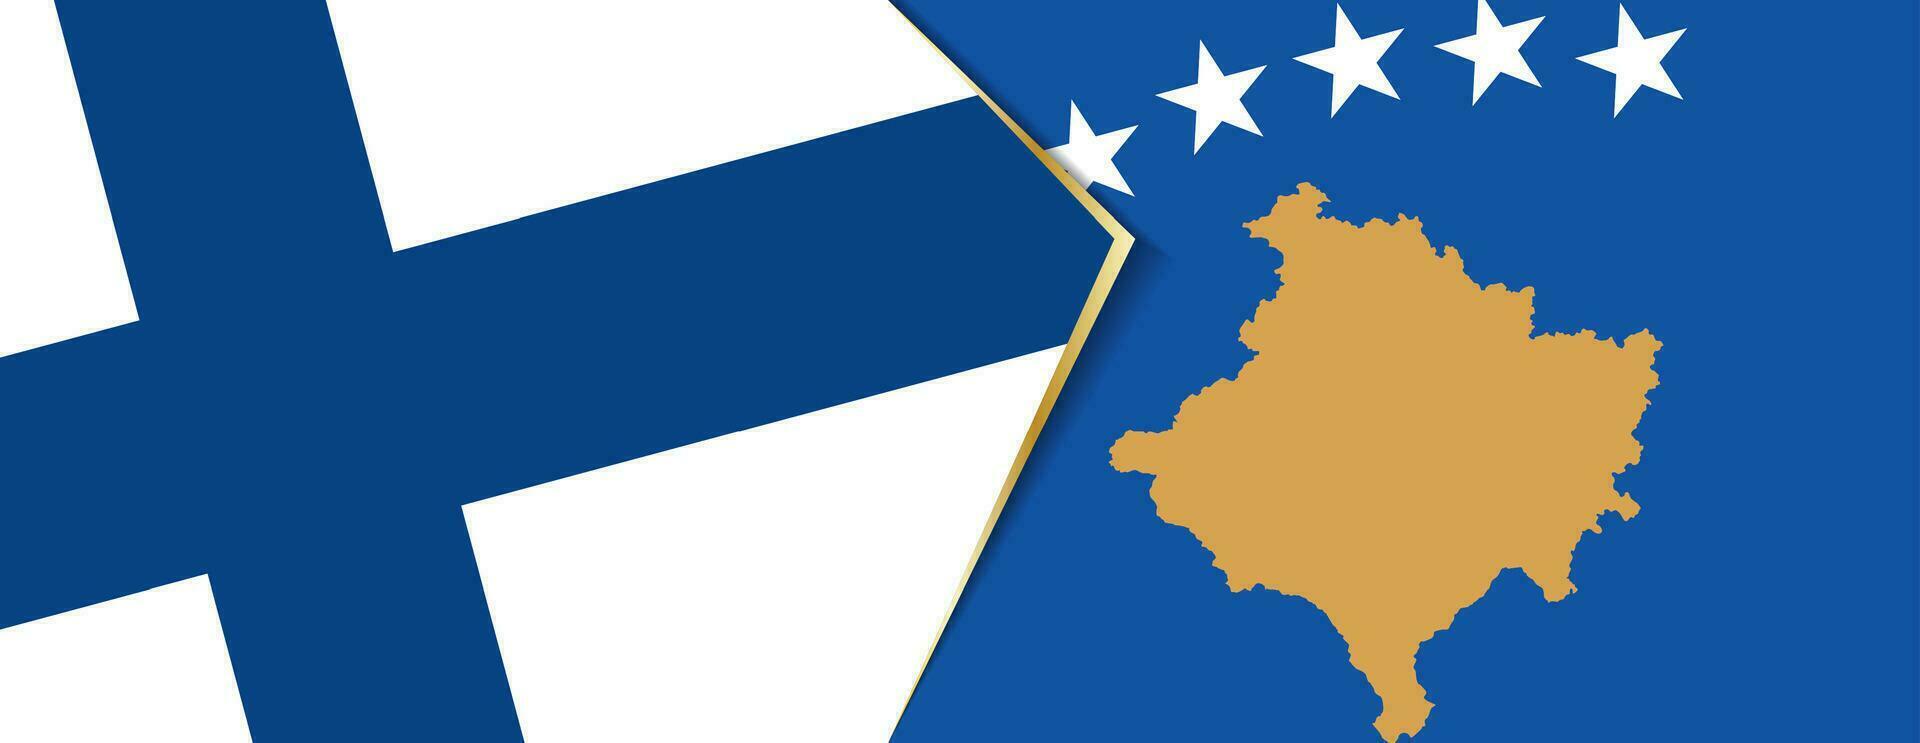 Finlandia e kosovo bandiere, Due vettore bandiere.